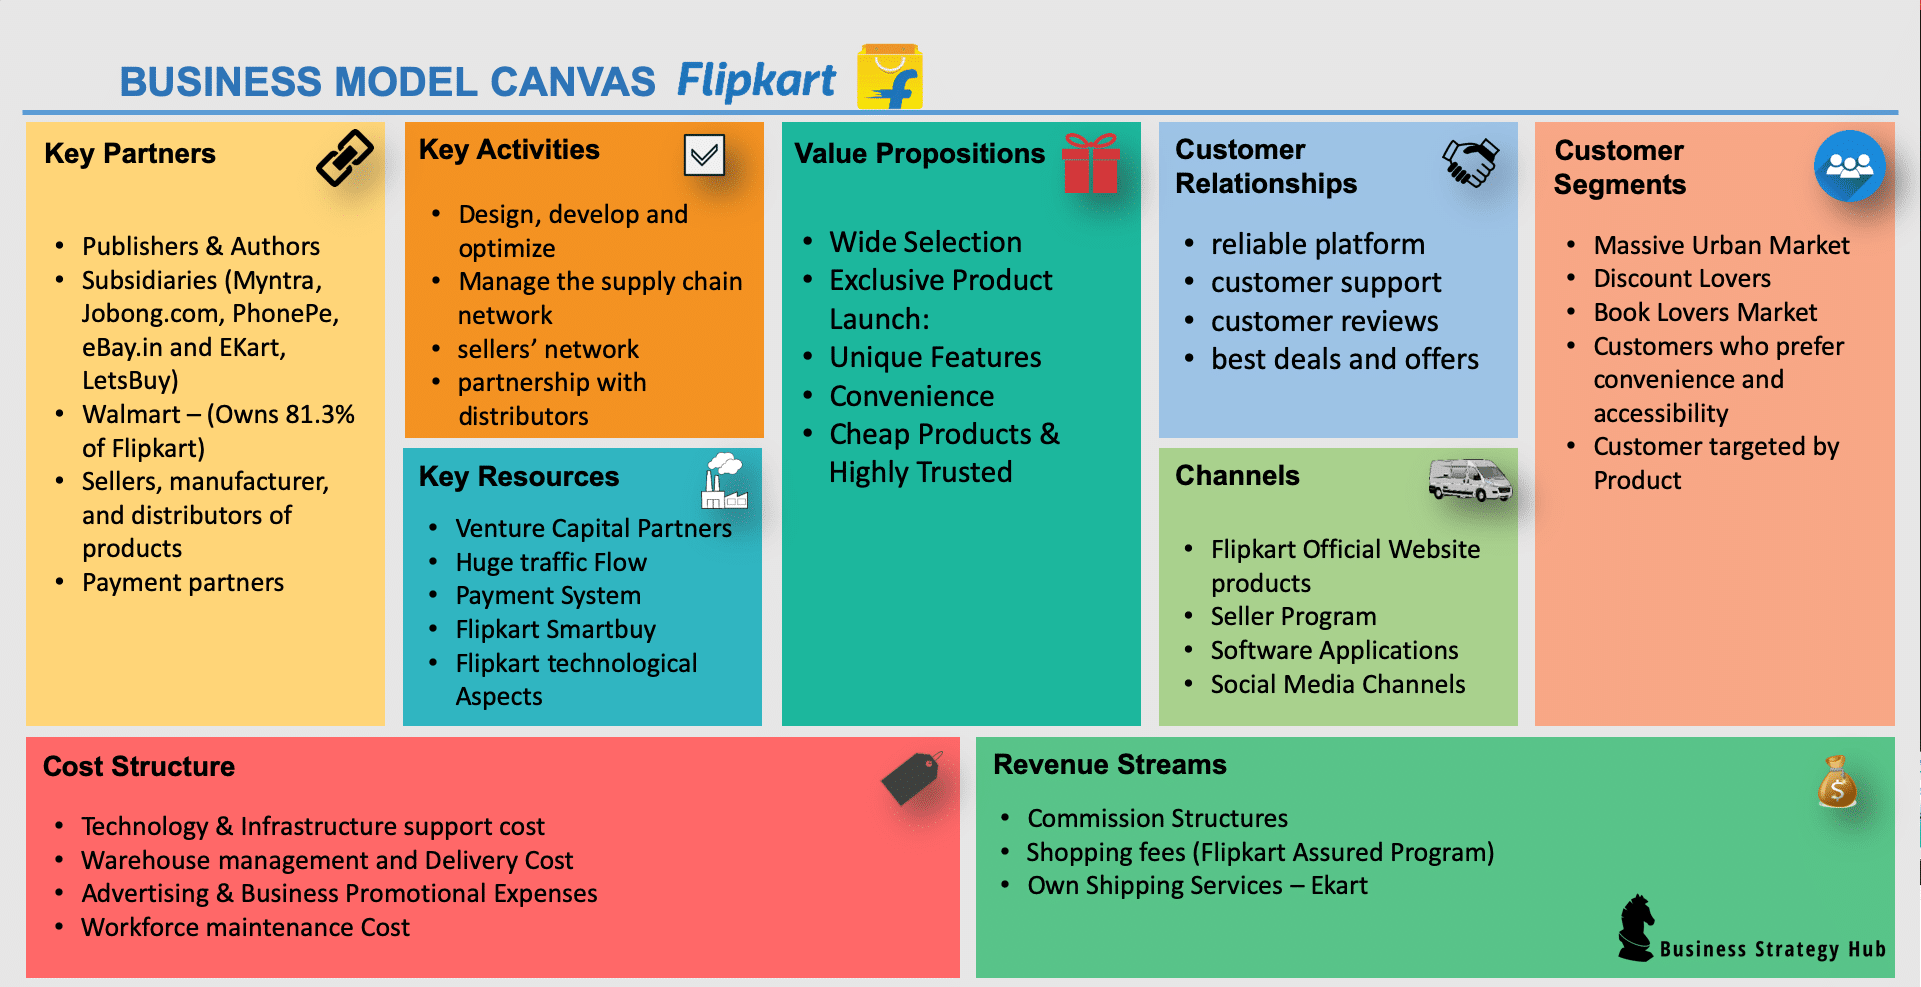 Flipkart Business Model | How does Flipkart make money? | Business Strategy Hub